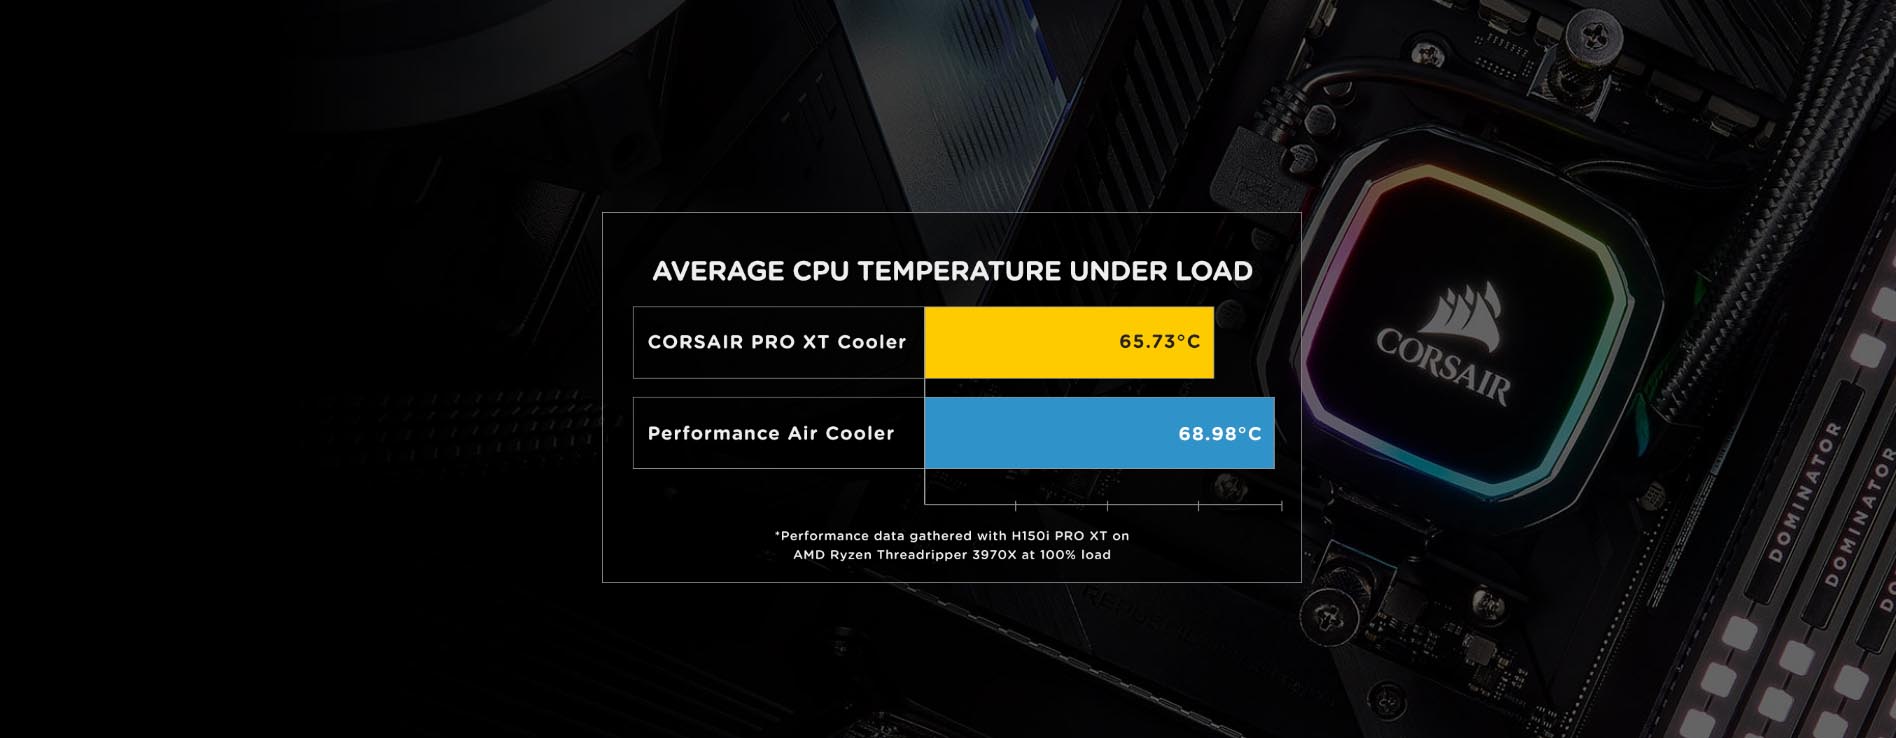 Corsair iCUE H115i RGB PRO XT Liquid CPU Cooler [ CW-9060044-WW ]